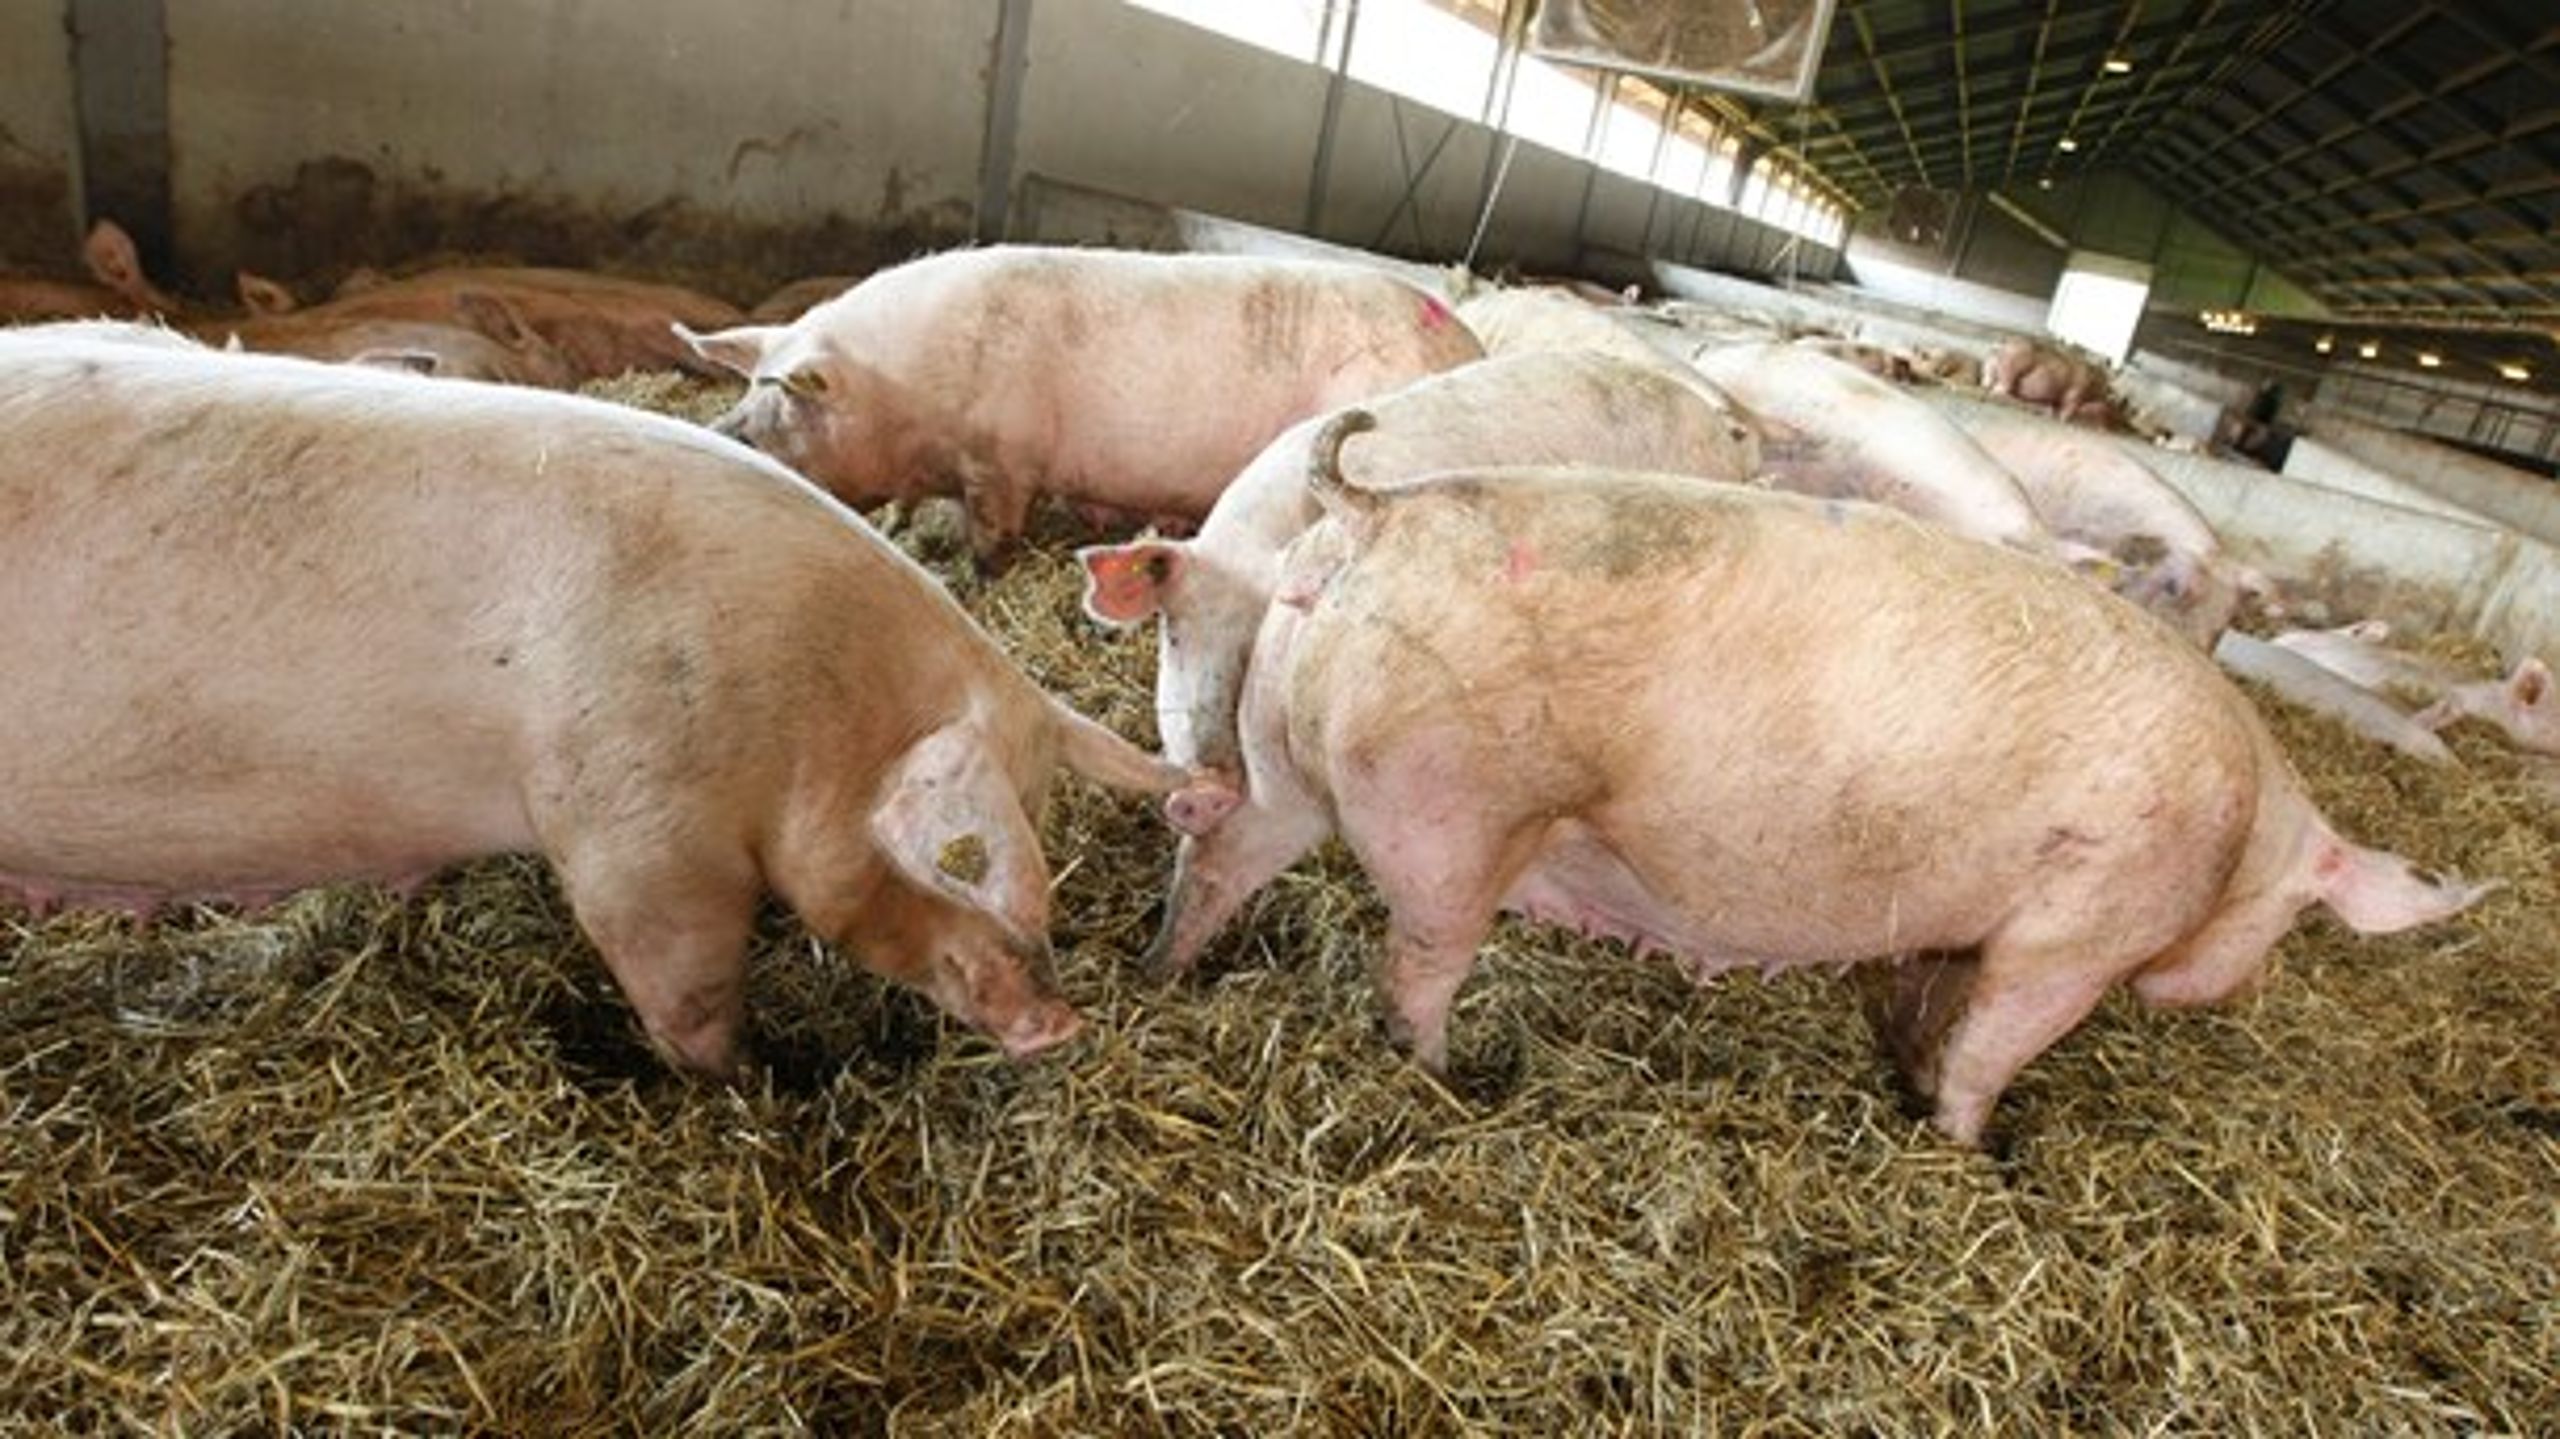 Forbruget af antibiotika i svineproduktion vil og skal aldrig blive nul, mener Nicolaj Nørgaard, direktør i Danske Svineproducenter.&nbsp;